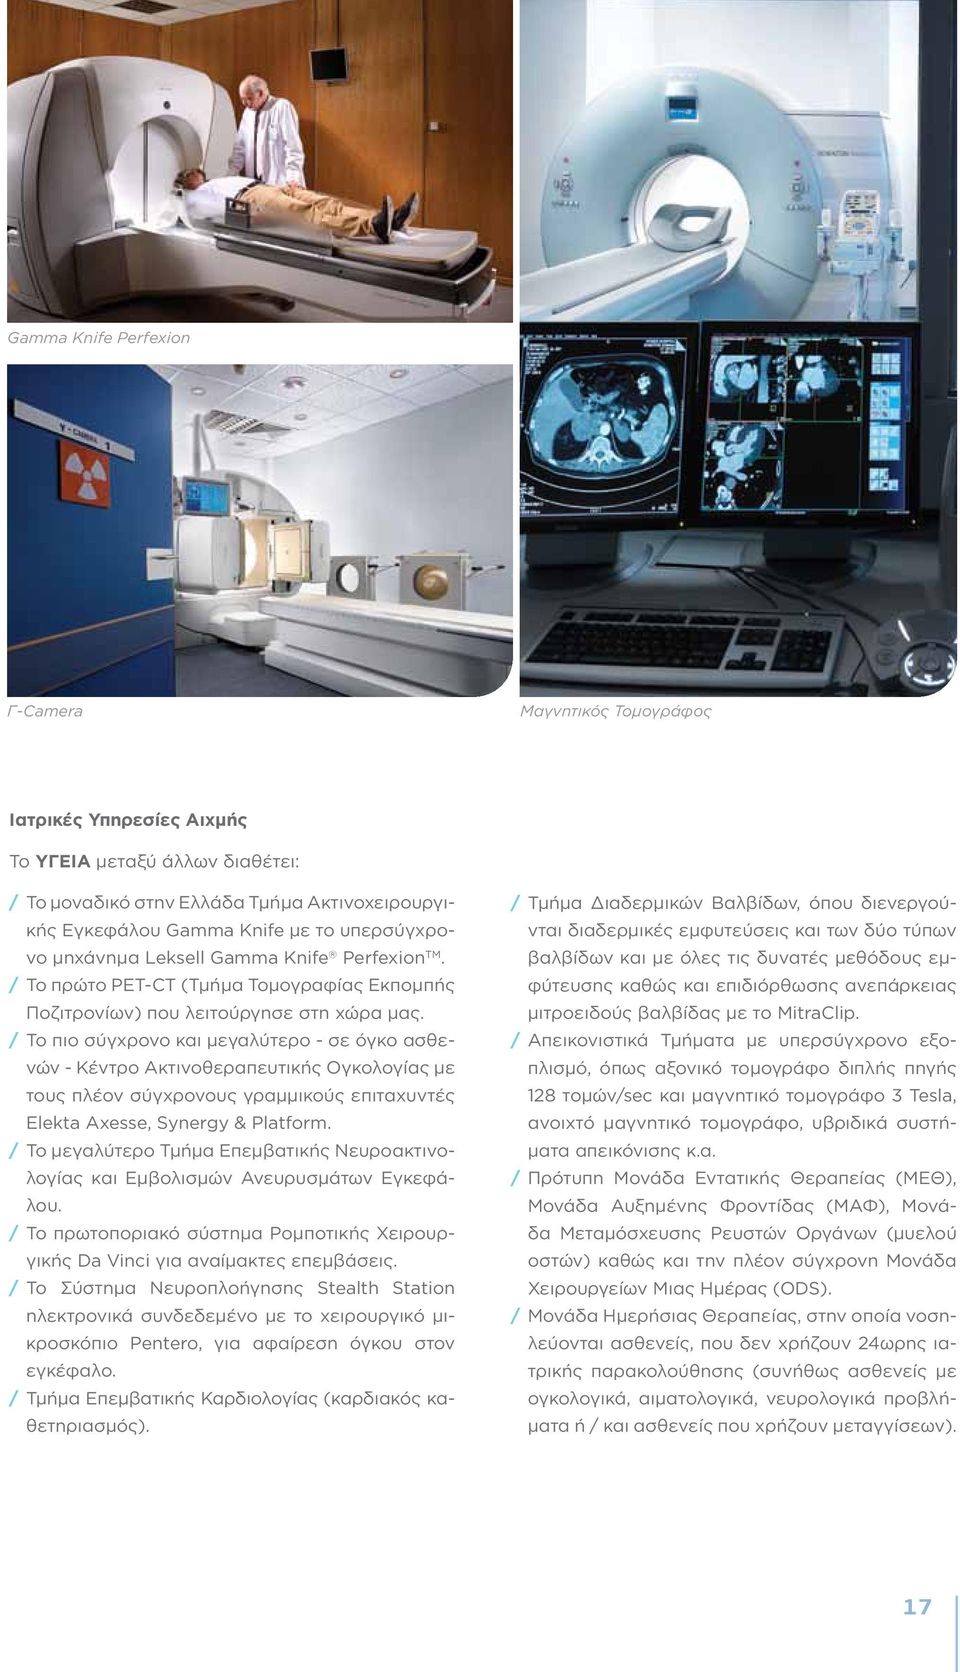 / Το πιο σύγχρονο και μεγαλύτερο - σε όγκο ασθενών - Κέντρο Ακτινοθεραπευτικής Ογκολογίας με τους πλέον σύγχρονους γραμμικούς επιταχυντές Elekta Axesse, Synergy & Platform.